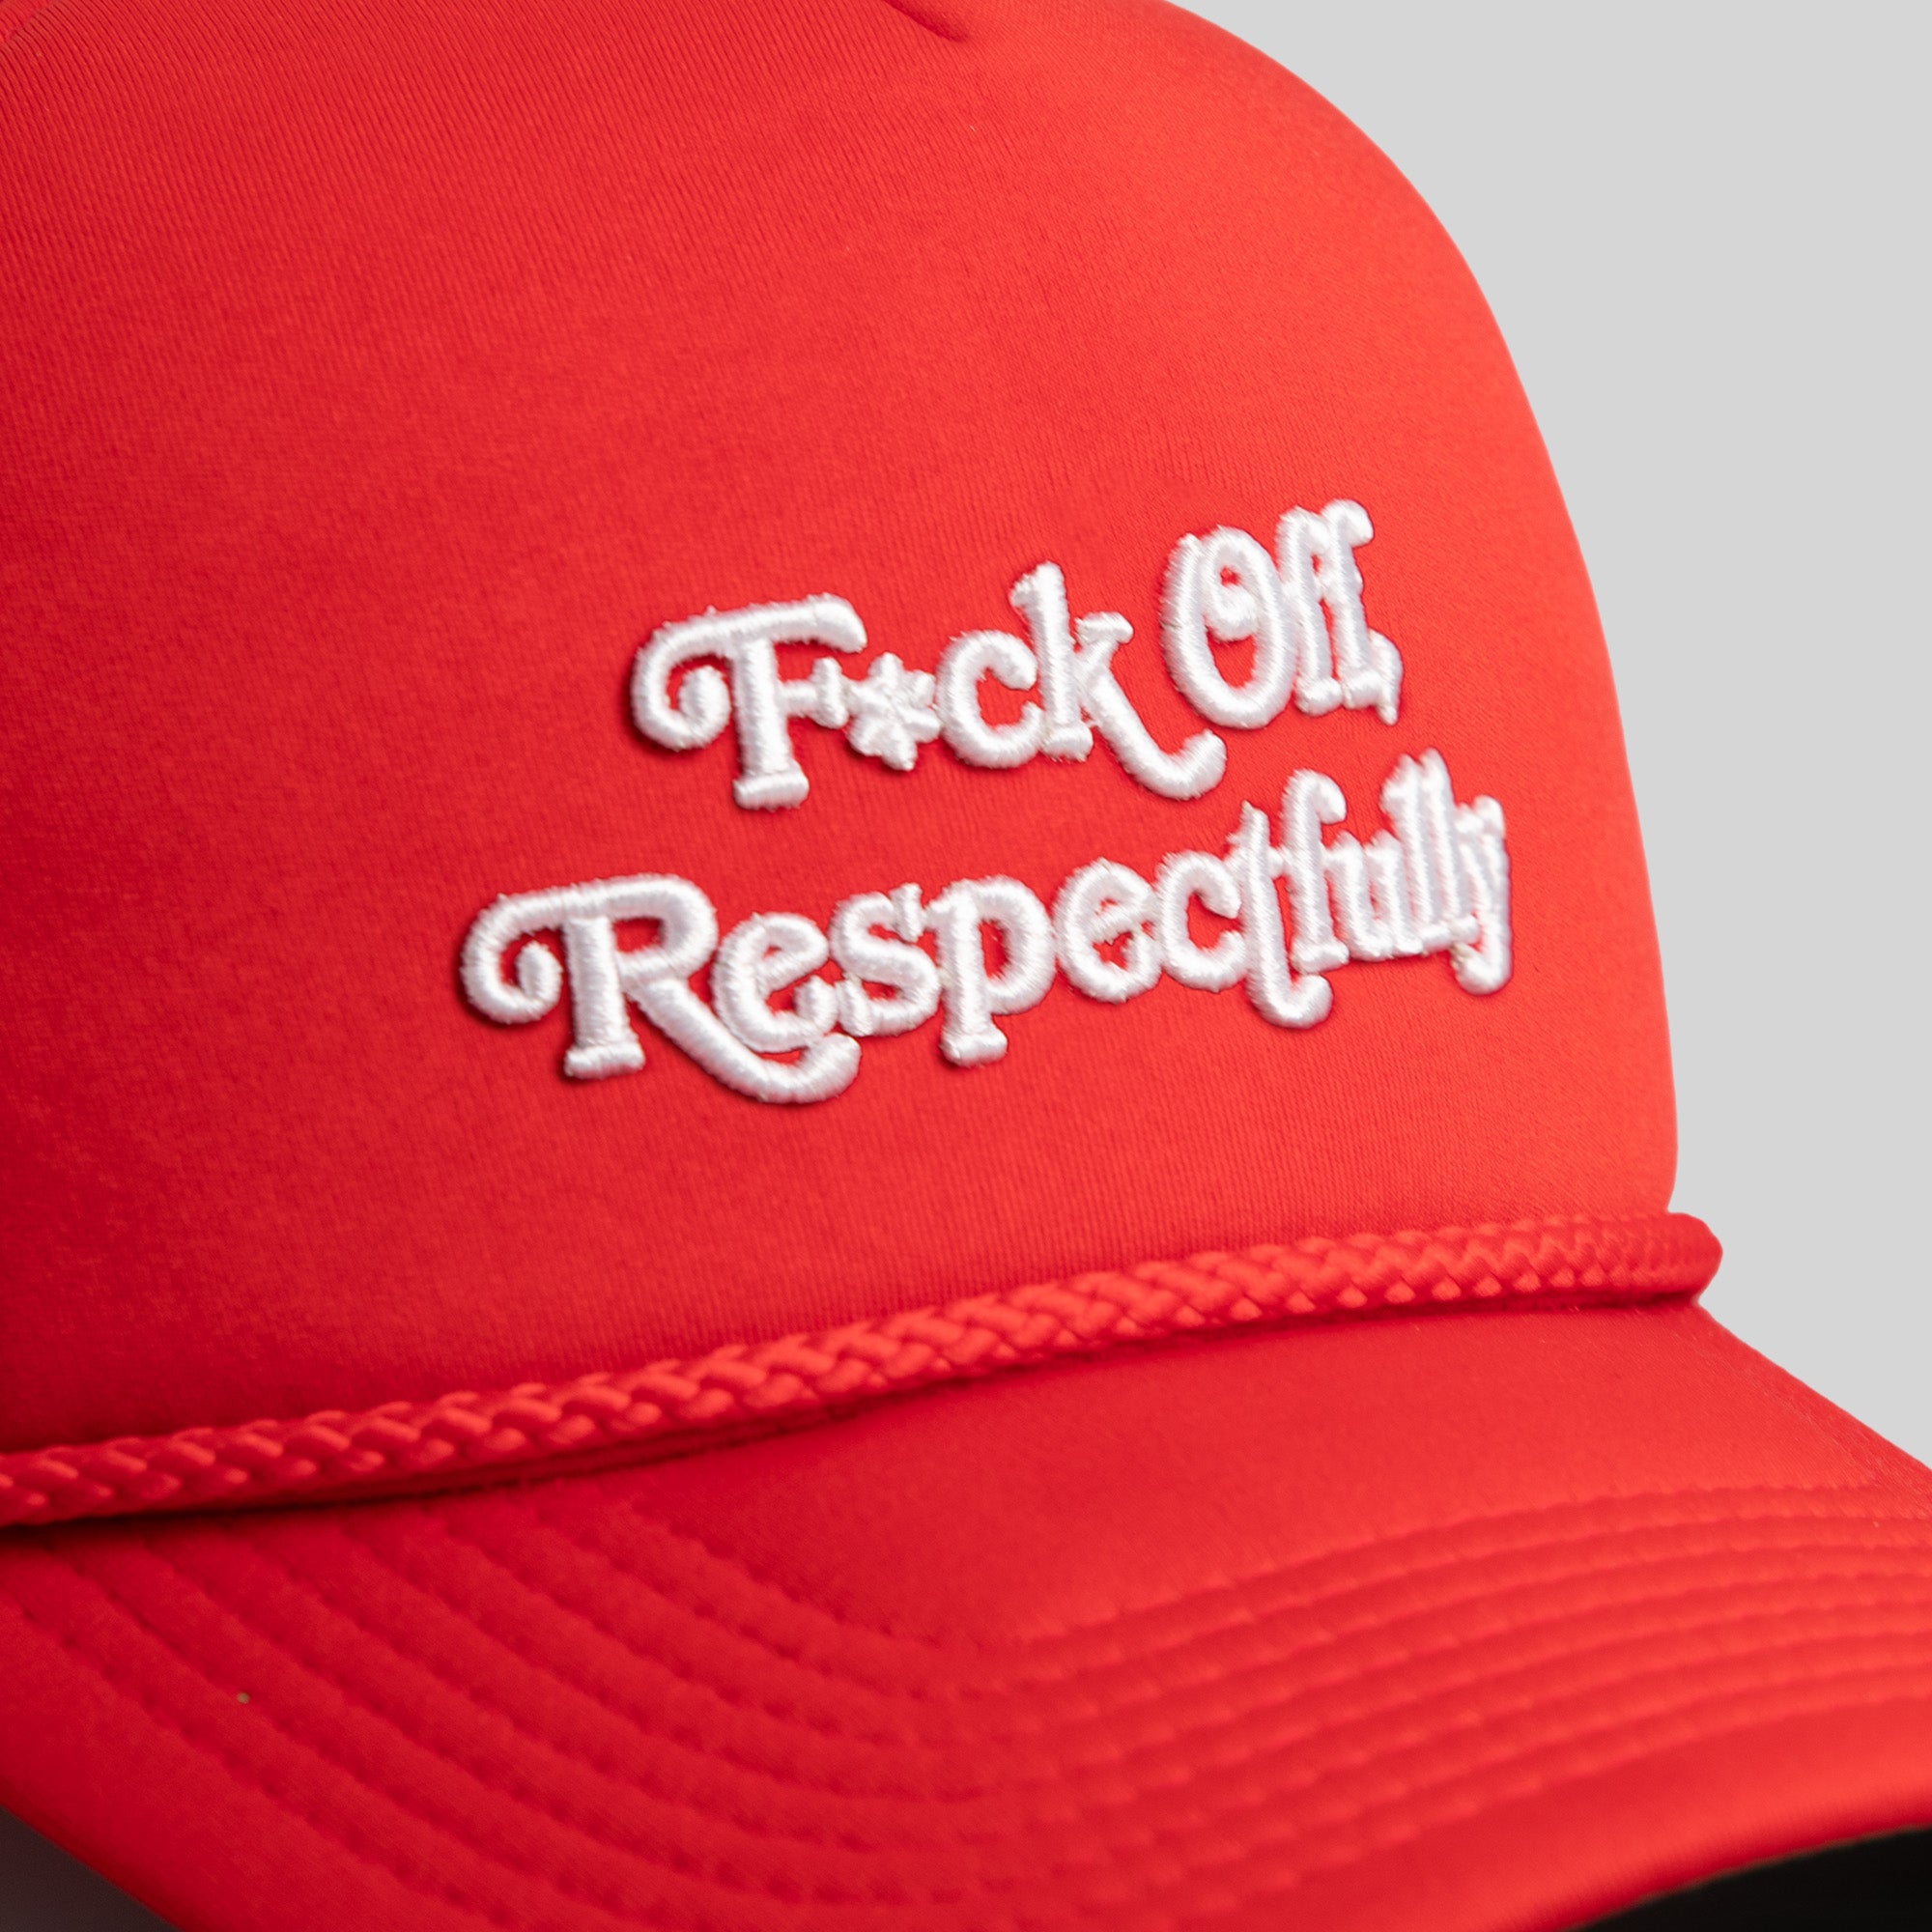 RESPECTFULLY VARSITY RED TRUCKER HAT